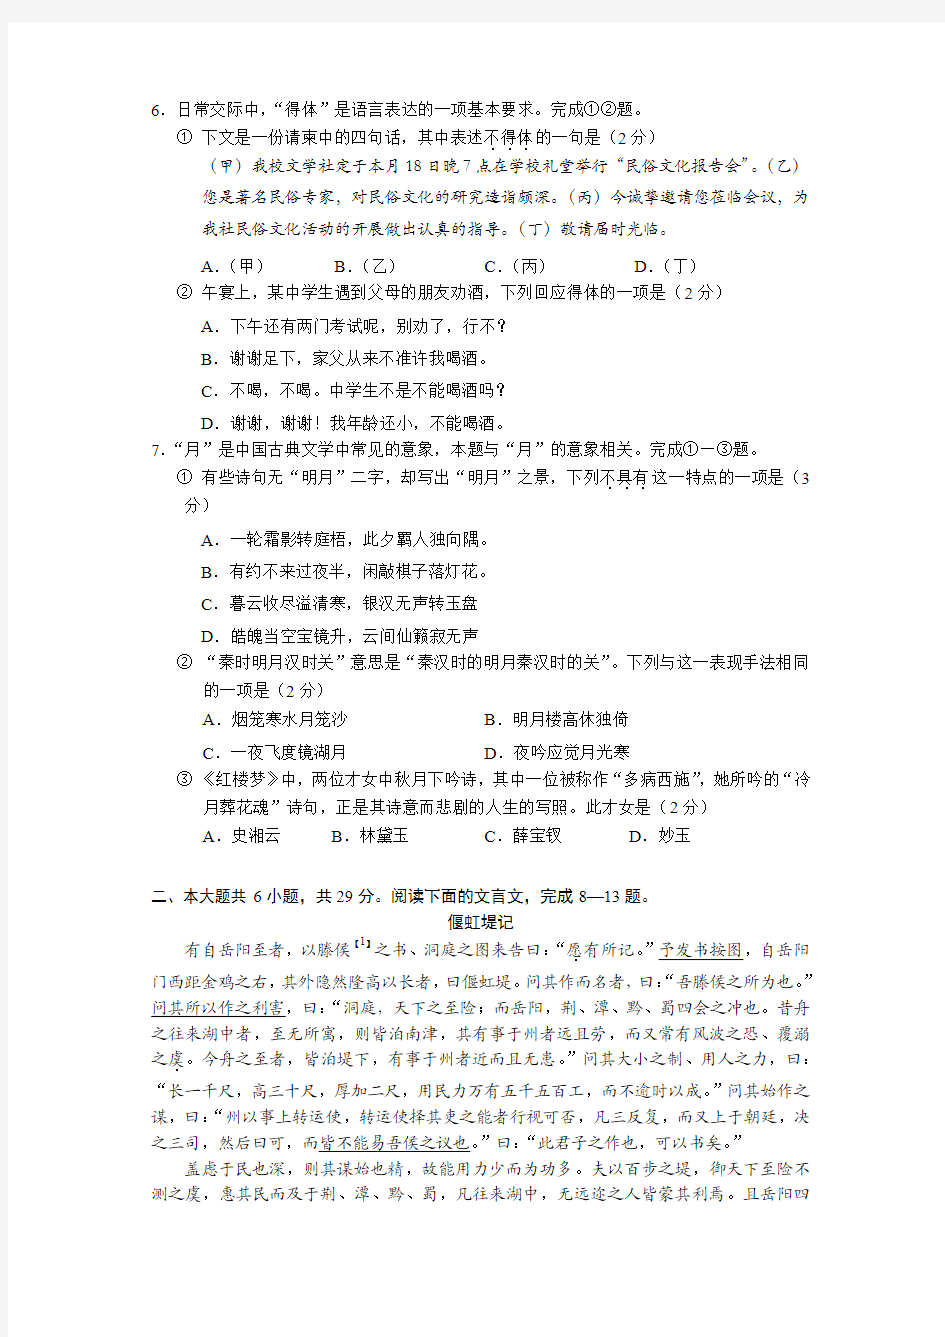 2014高考北京语文试题及答案